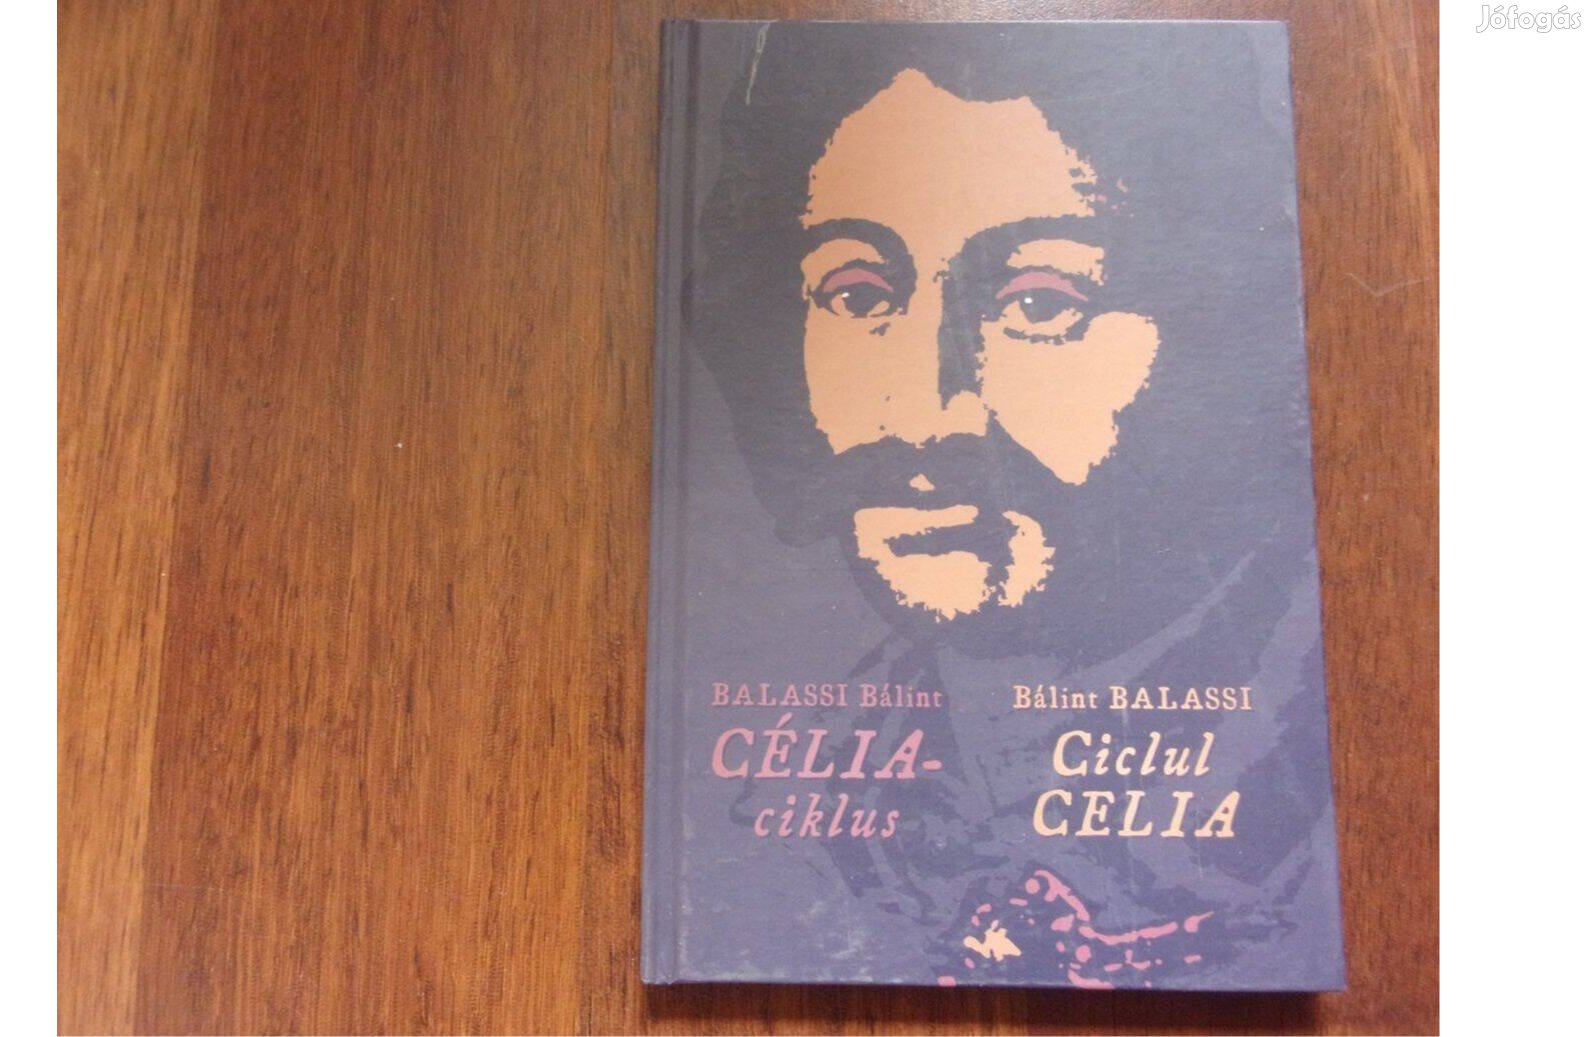 Balassi Bálint Célia-Ciklus - nagyon ritka